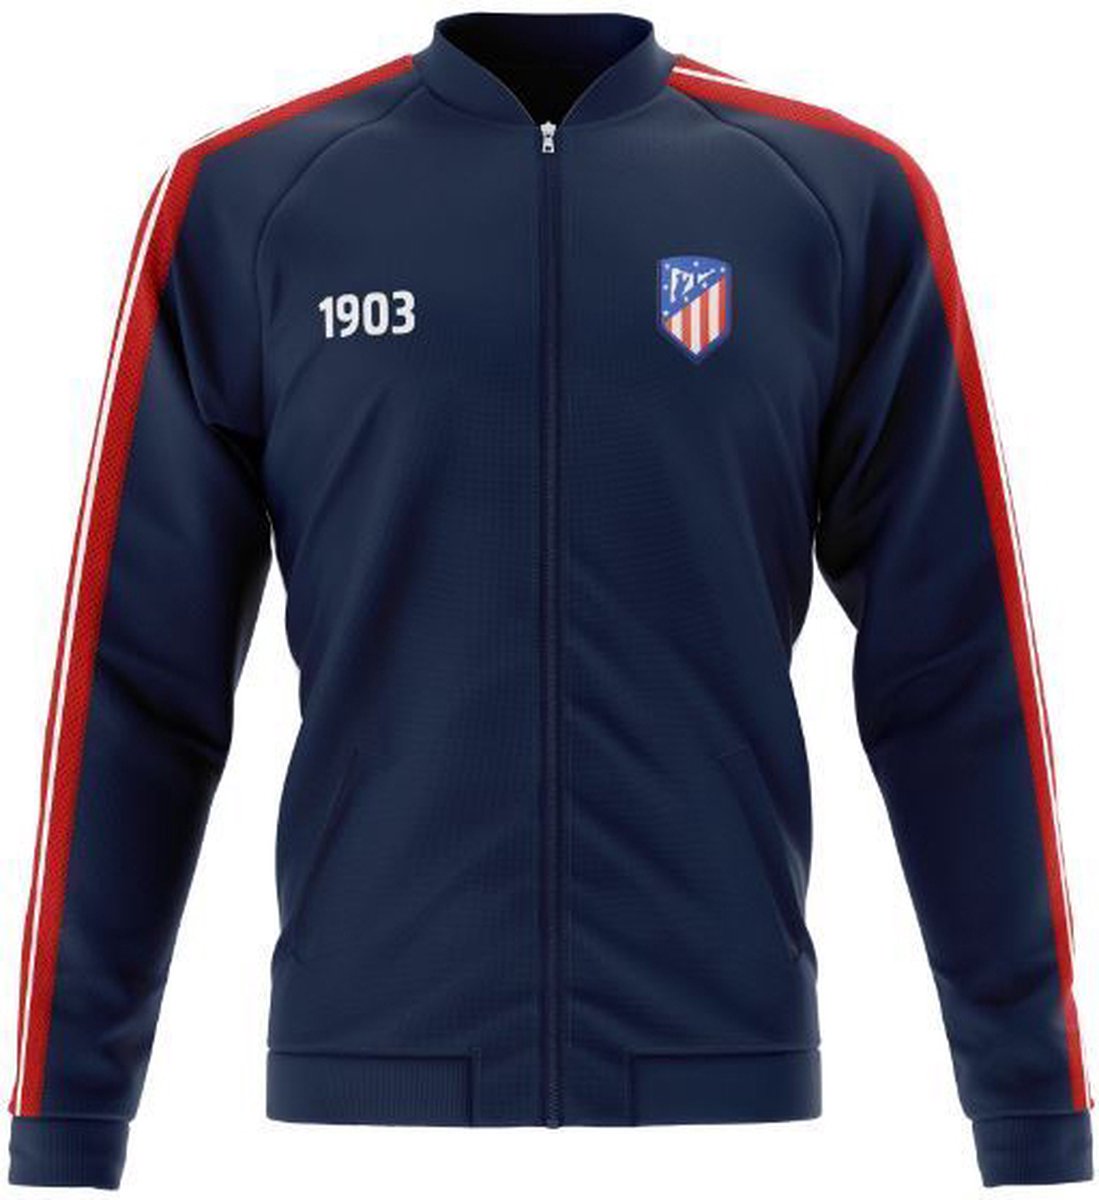 Atletico Madrid jacket volwassenen - maat S - 1903 blauw/rood